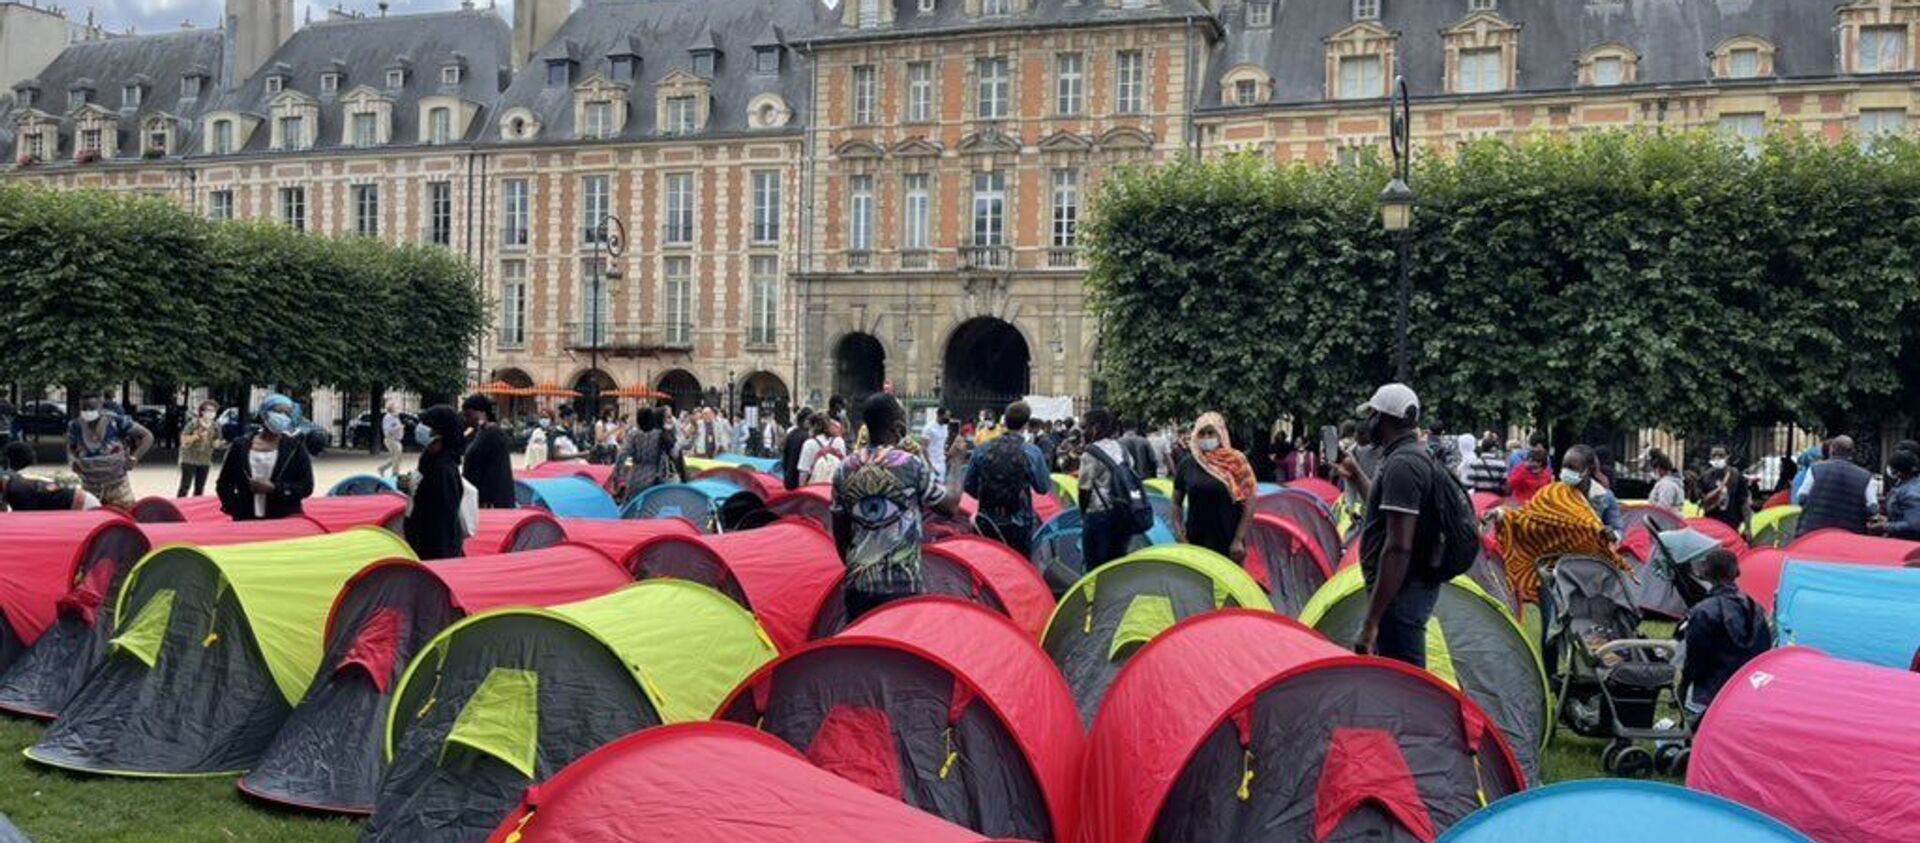 Fransa’nın başkenti Paris’teki turistik alanlardan Vosges Meydanında 400 kadar evsiz, 'onurlu barınma' isteğiyle çadır kurdu. - Sputnik Türkiye, 1920, 30.07.2021